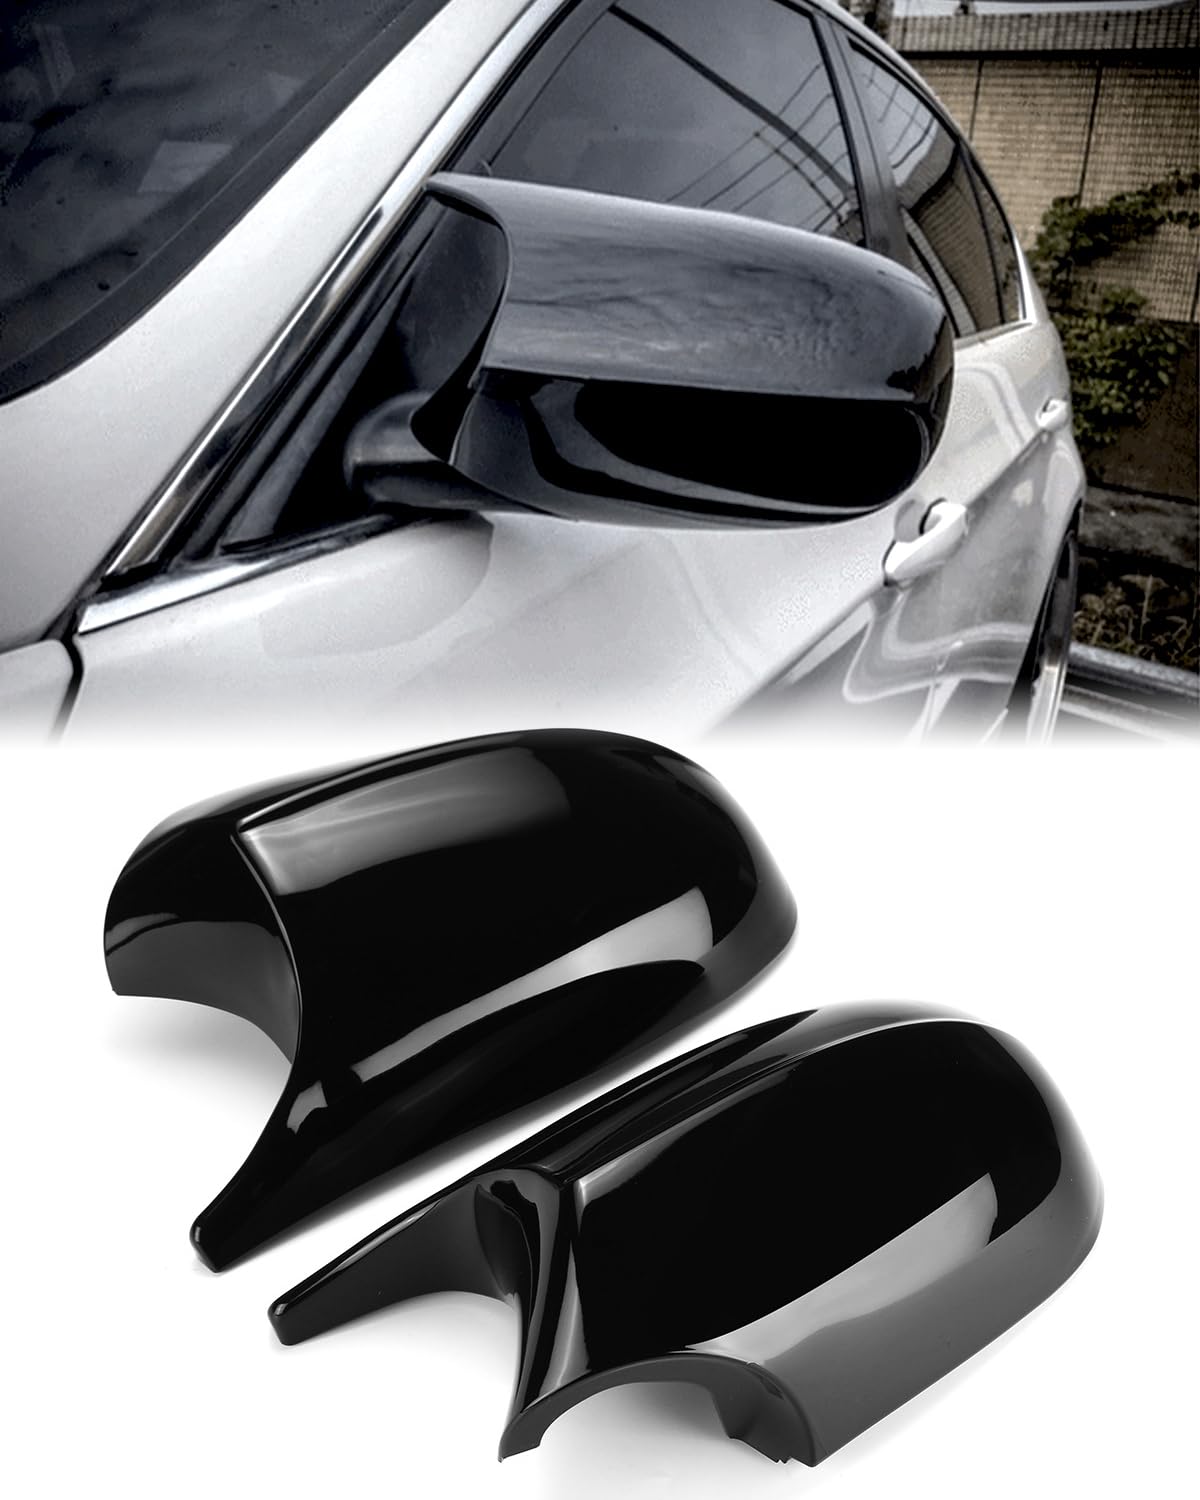 E90 Side Mirror Caps, Door Rearview Mirror Cover Cap for BMW E90 E91(2008-2011) E92 E93(2010-2013) E87(2008-2011) E81(2010-2012) E82 E88 (2010-2013) 3-Series von SHSBSCAR